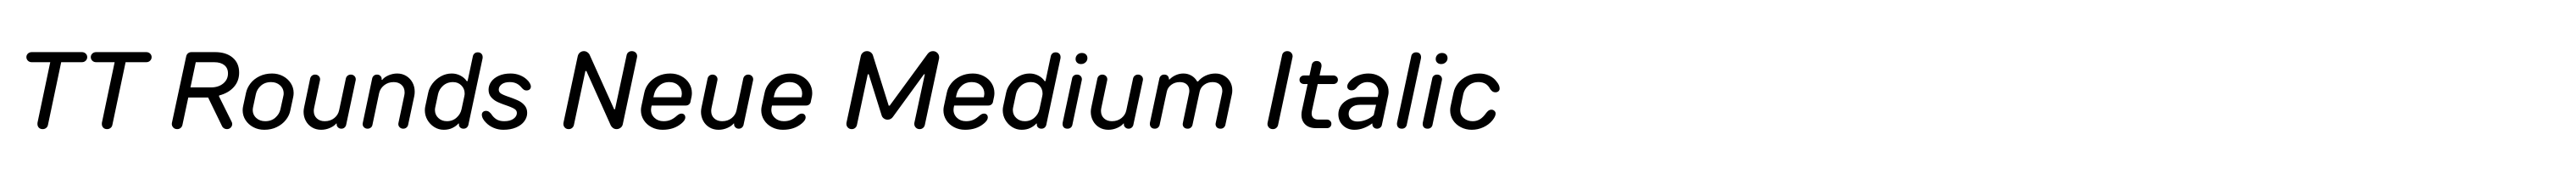 TT Rounds Neue Medium Italic